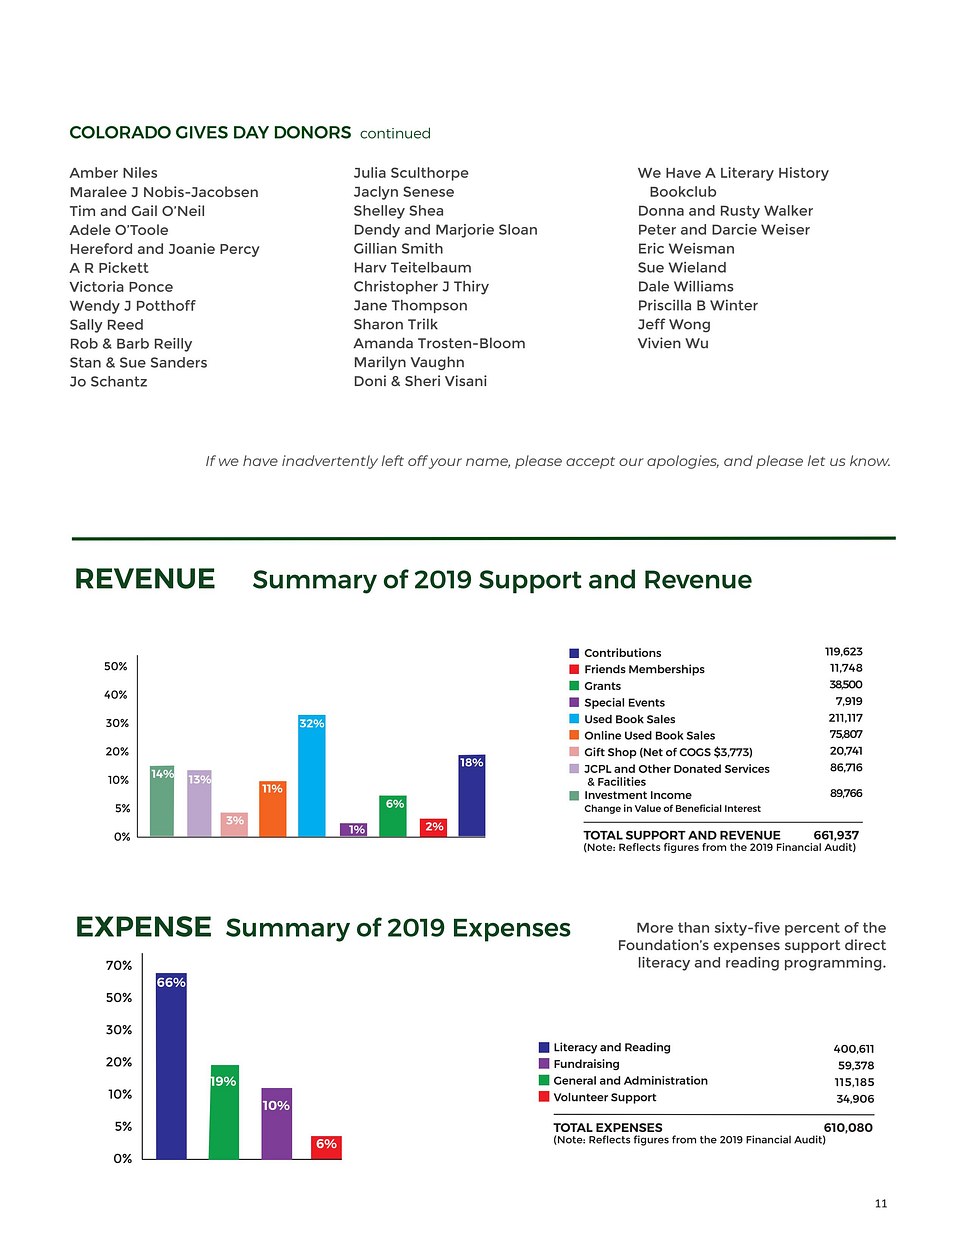 Annual Report Revenue Table